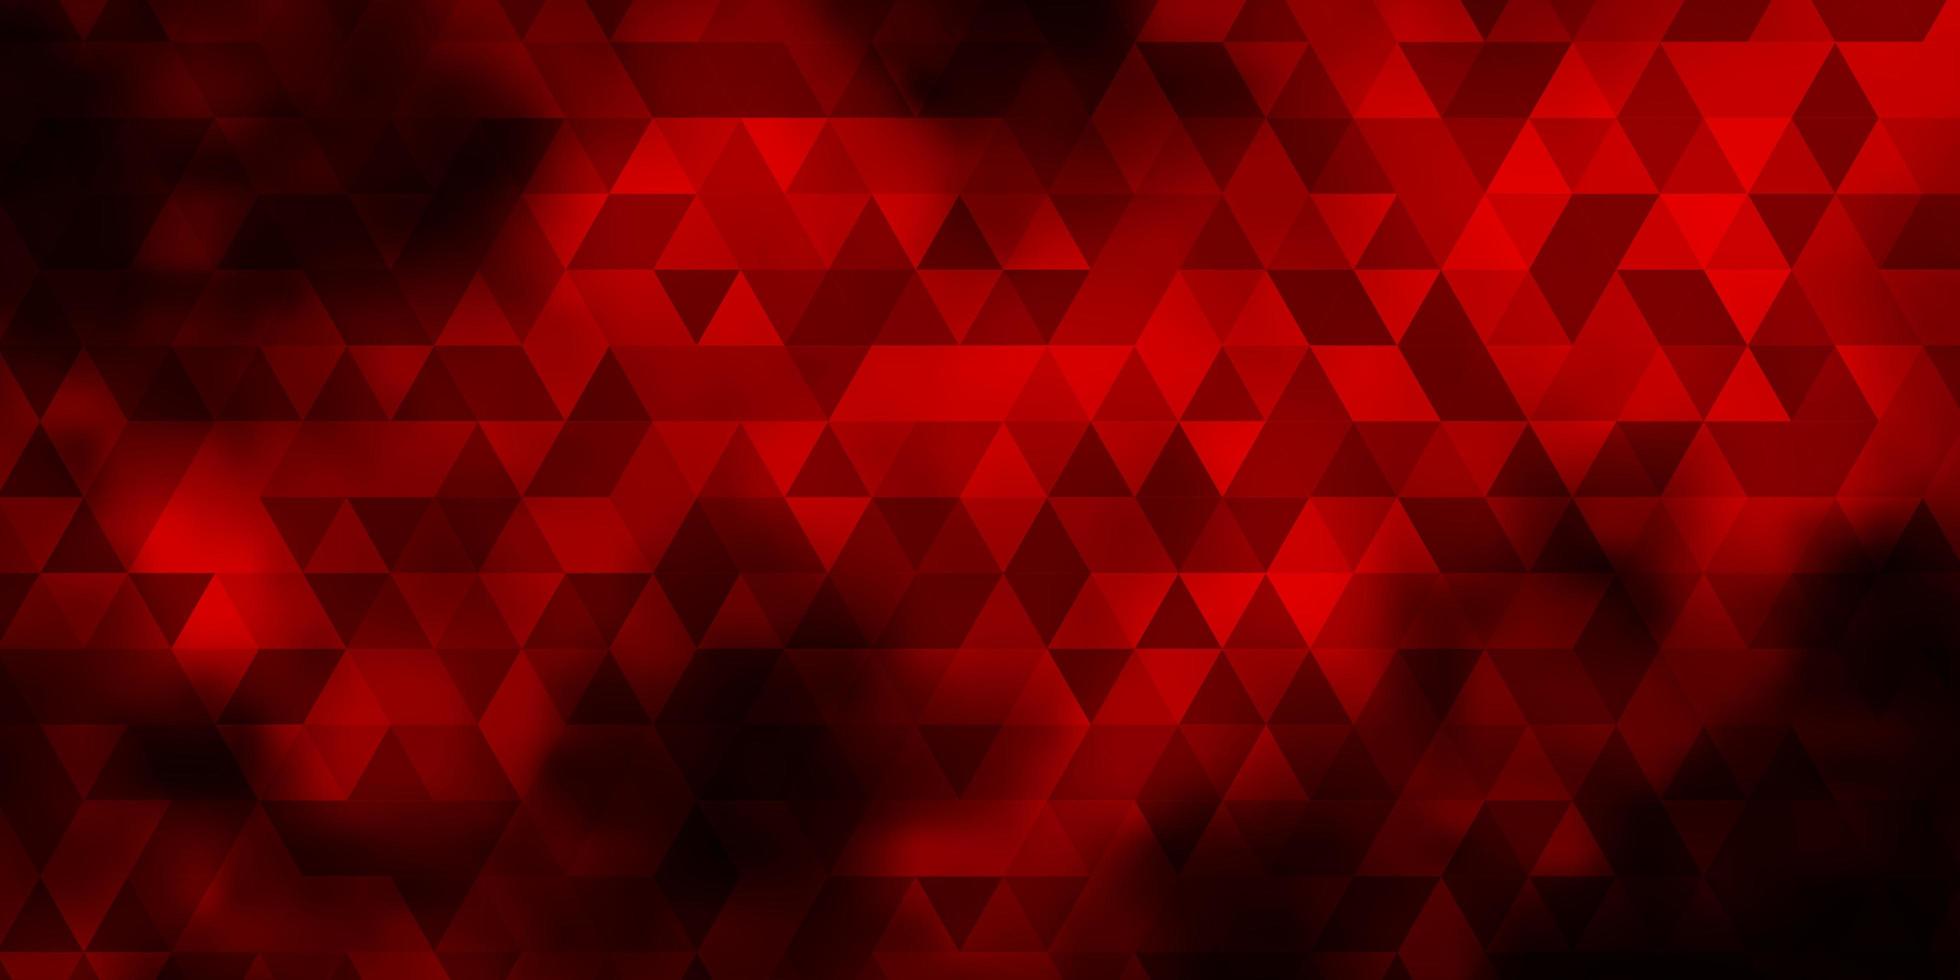 plantilla de vector rojo oscuro con cristales, triángulos.